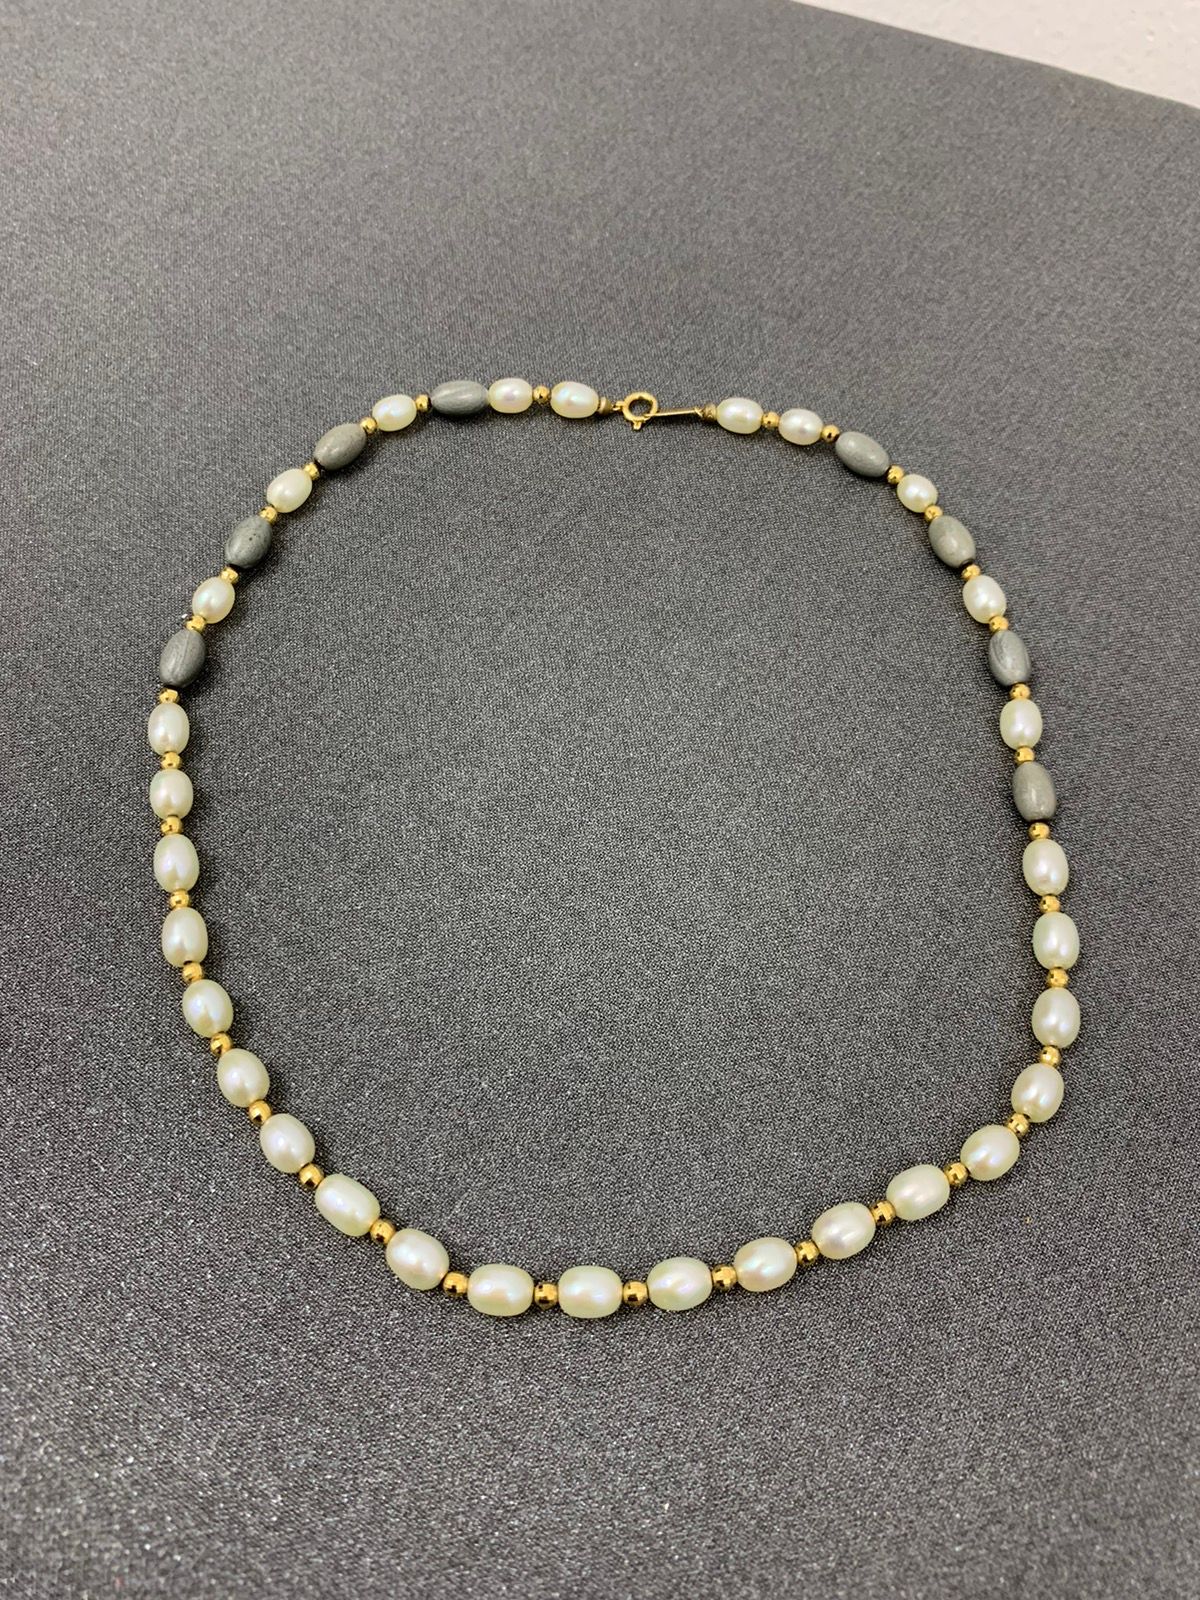 Vintage 18K Gold Natural Pearls Necklace - 2